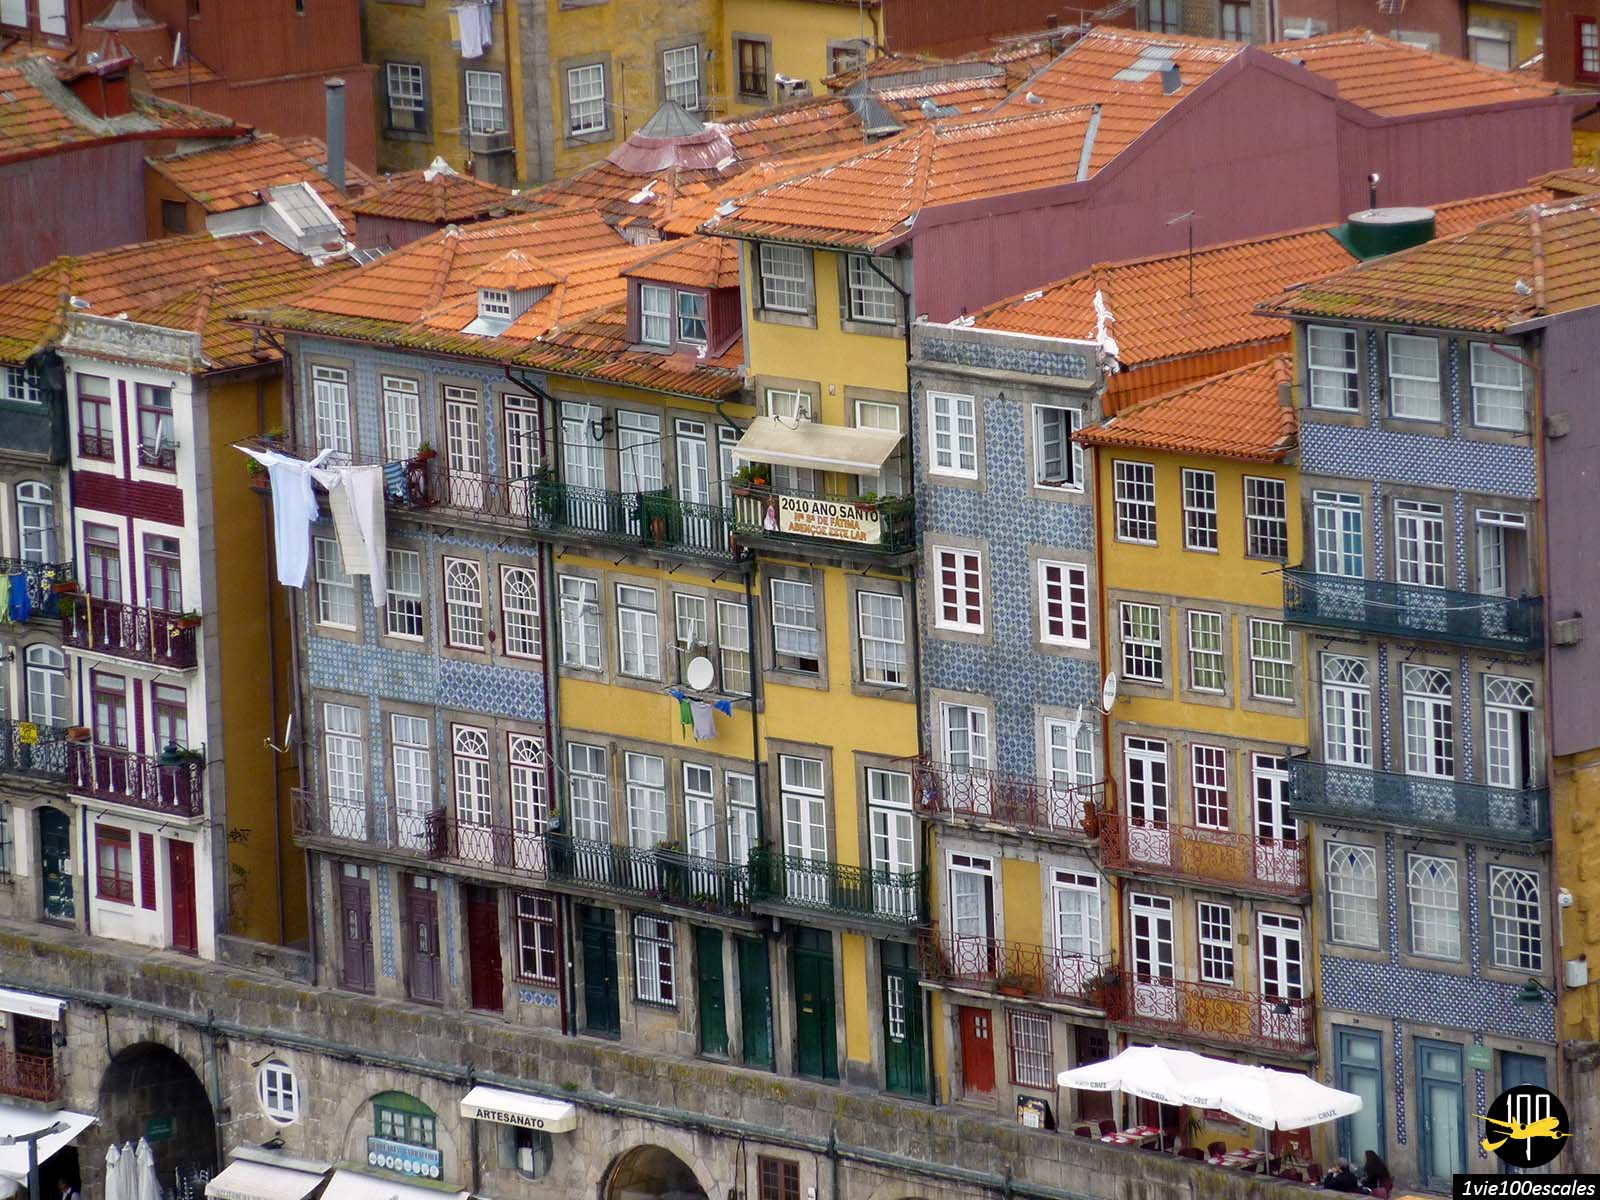 La Ribeira et ses façades colorées et décorées attirent l'attention de tous les visiteurs, tant celles qui donnent sur le Douro et s'y reflètent